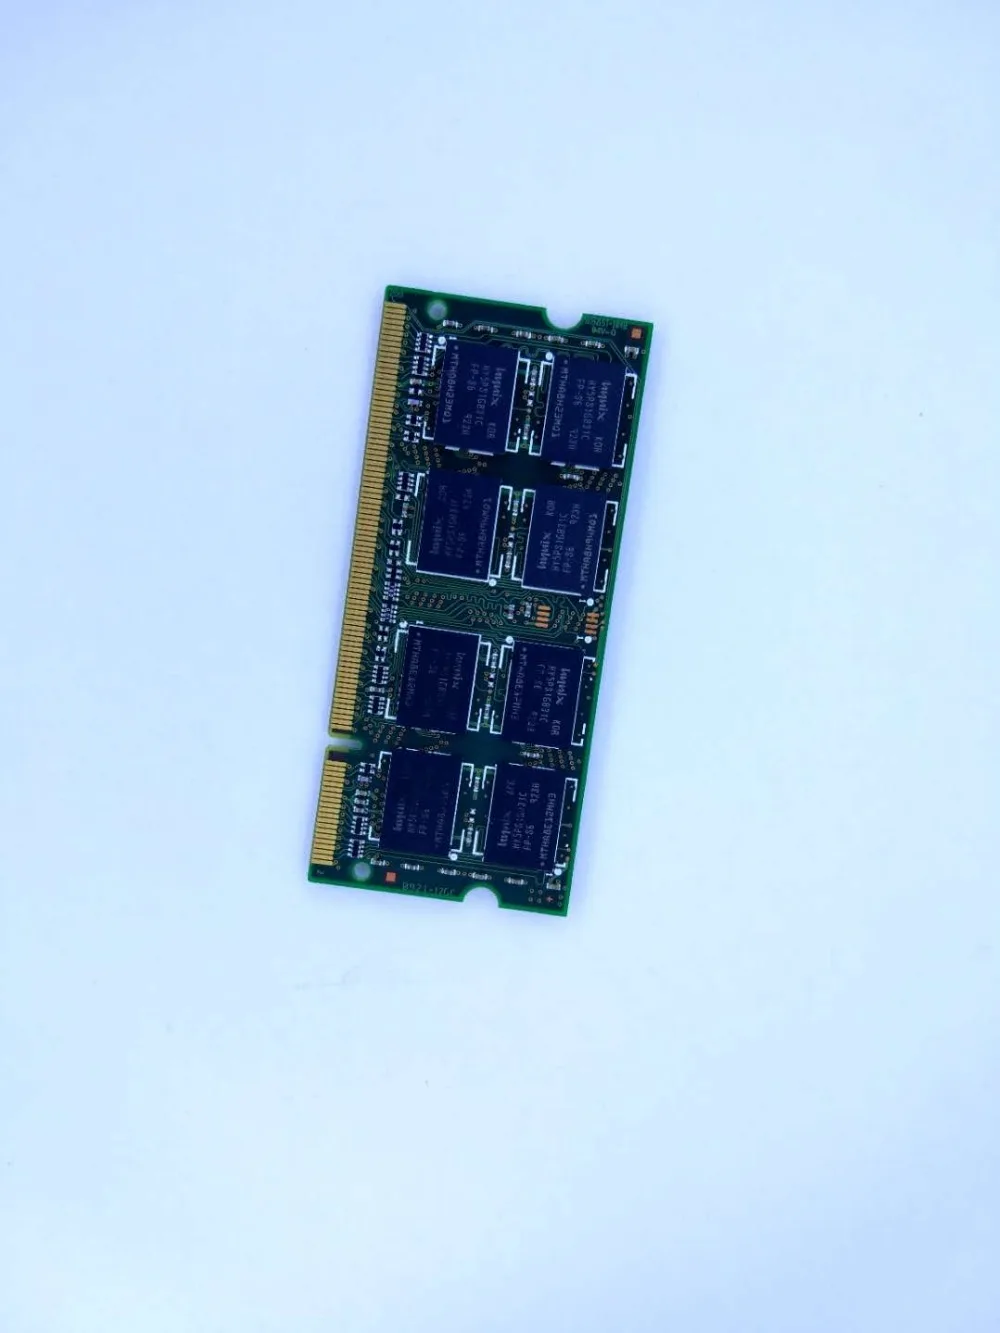 ОЗУ DDR2 для ноутбука, 4 Гб, 667 МГц, 2G, pc2, 5300 дюйма, 2 Гб, 2Rx8, для MacBook A1181 MB062, MB063, MB402, MB403, MD404, MB133, MB134 от AliExpress WW